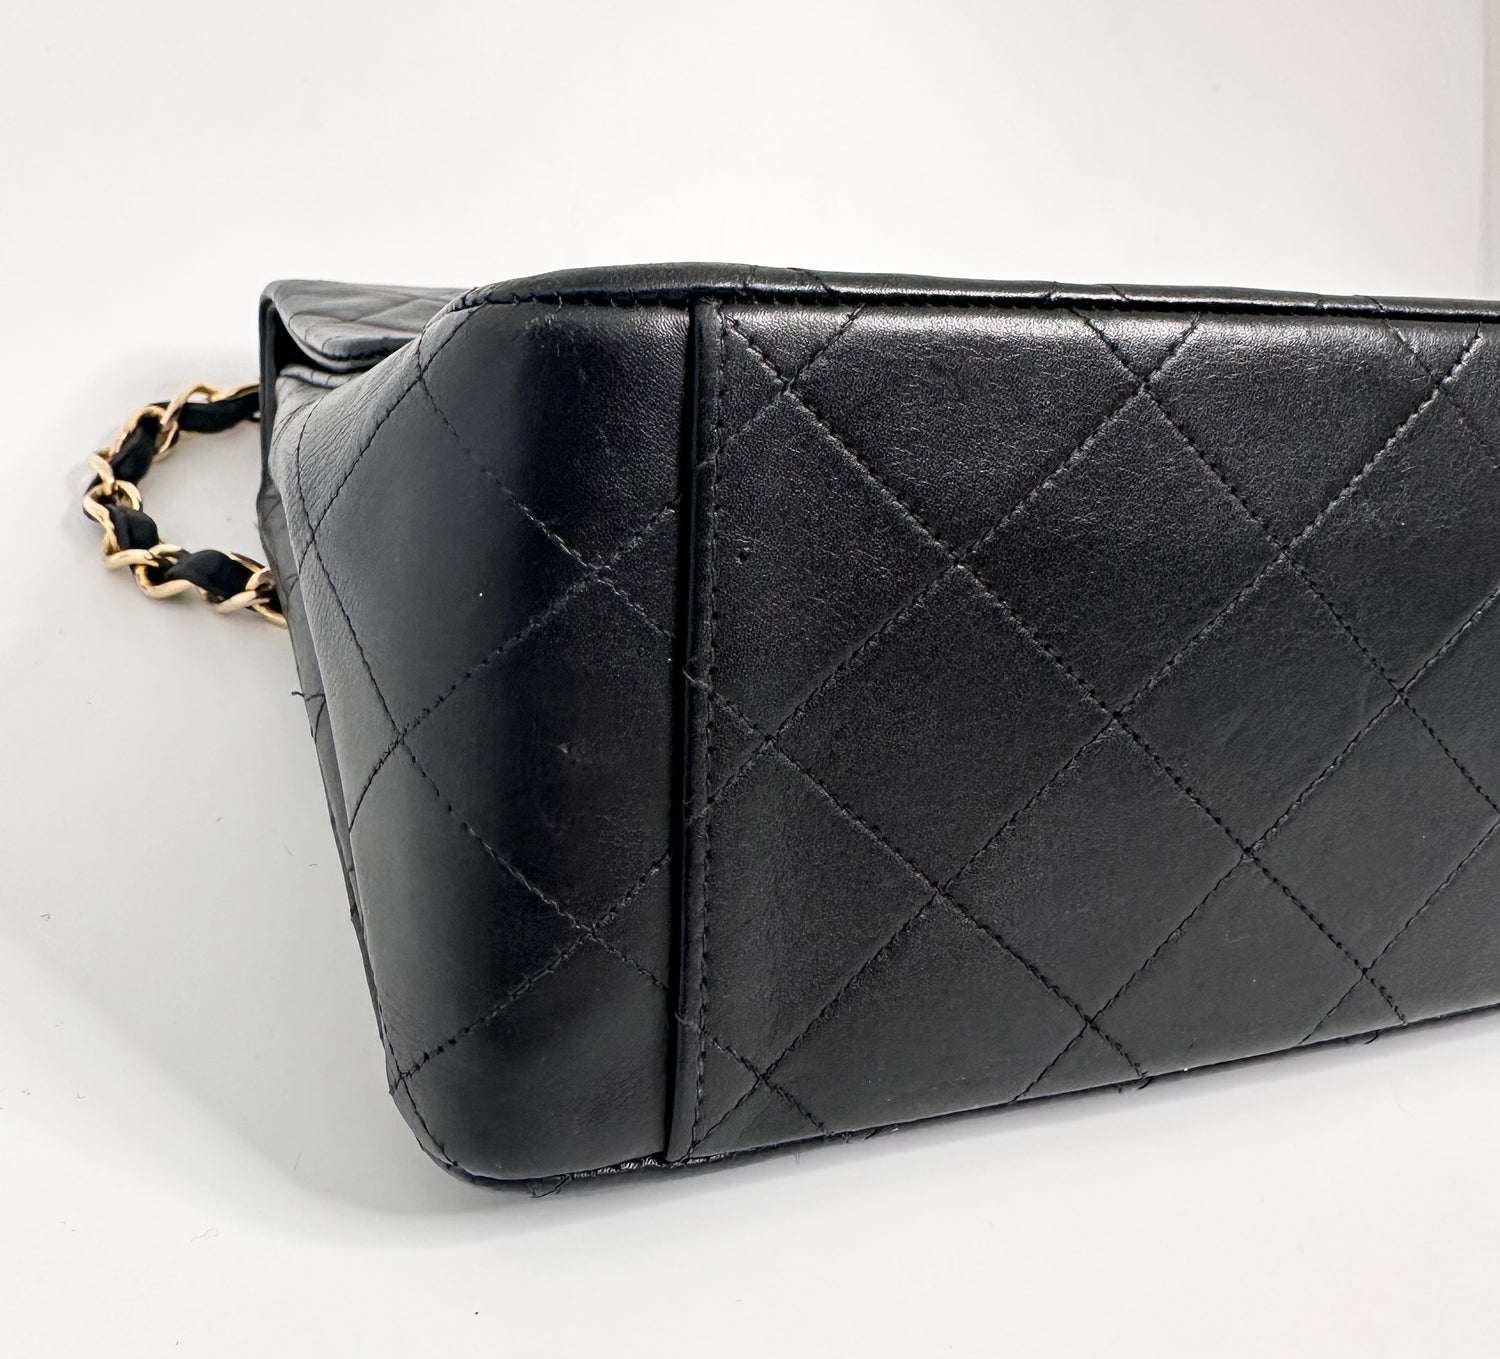 Chanel Maxi Flap Shoulder Bag